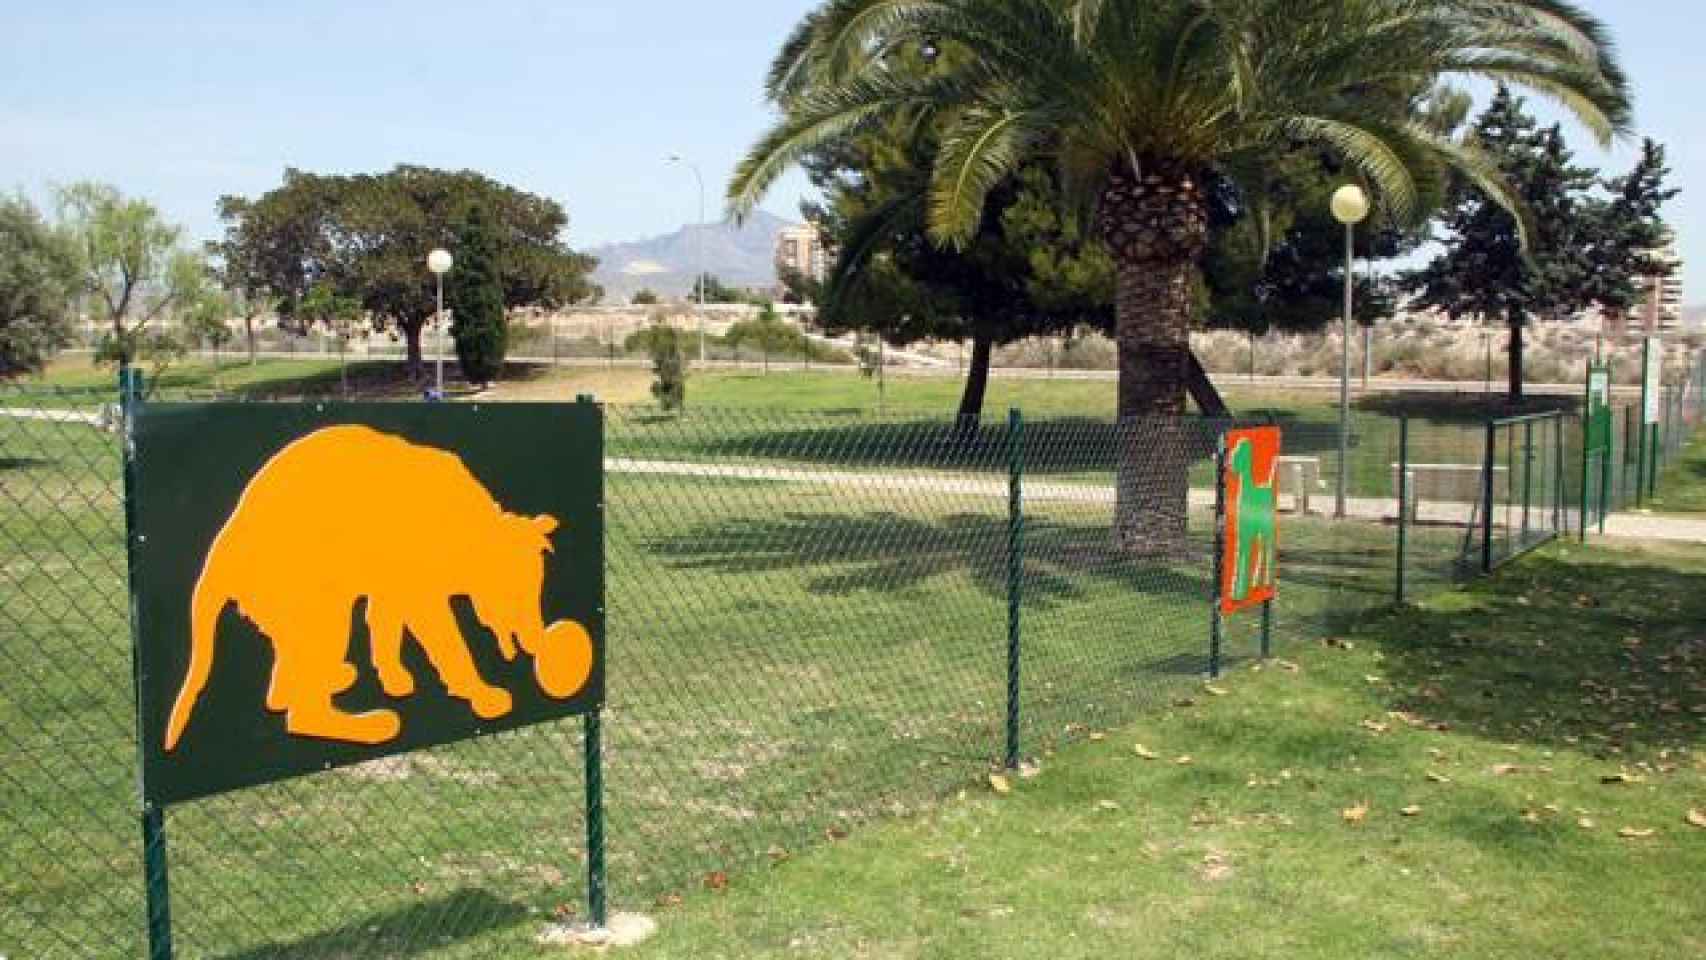 Parques para perros en Valencia, ¿cuál elijo? - Saludes Play